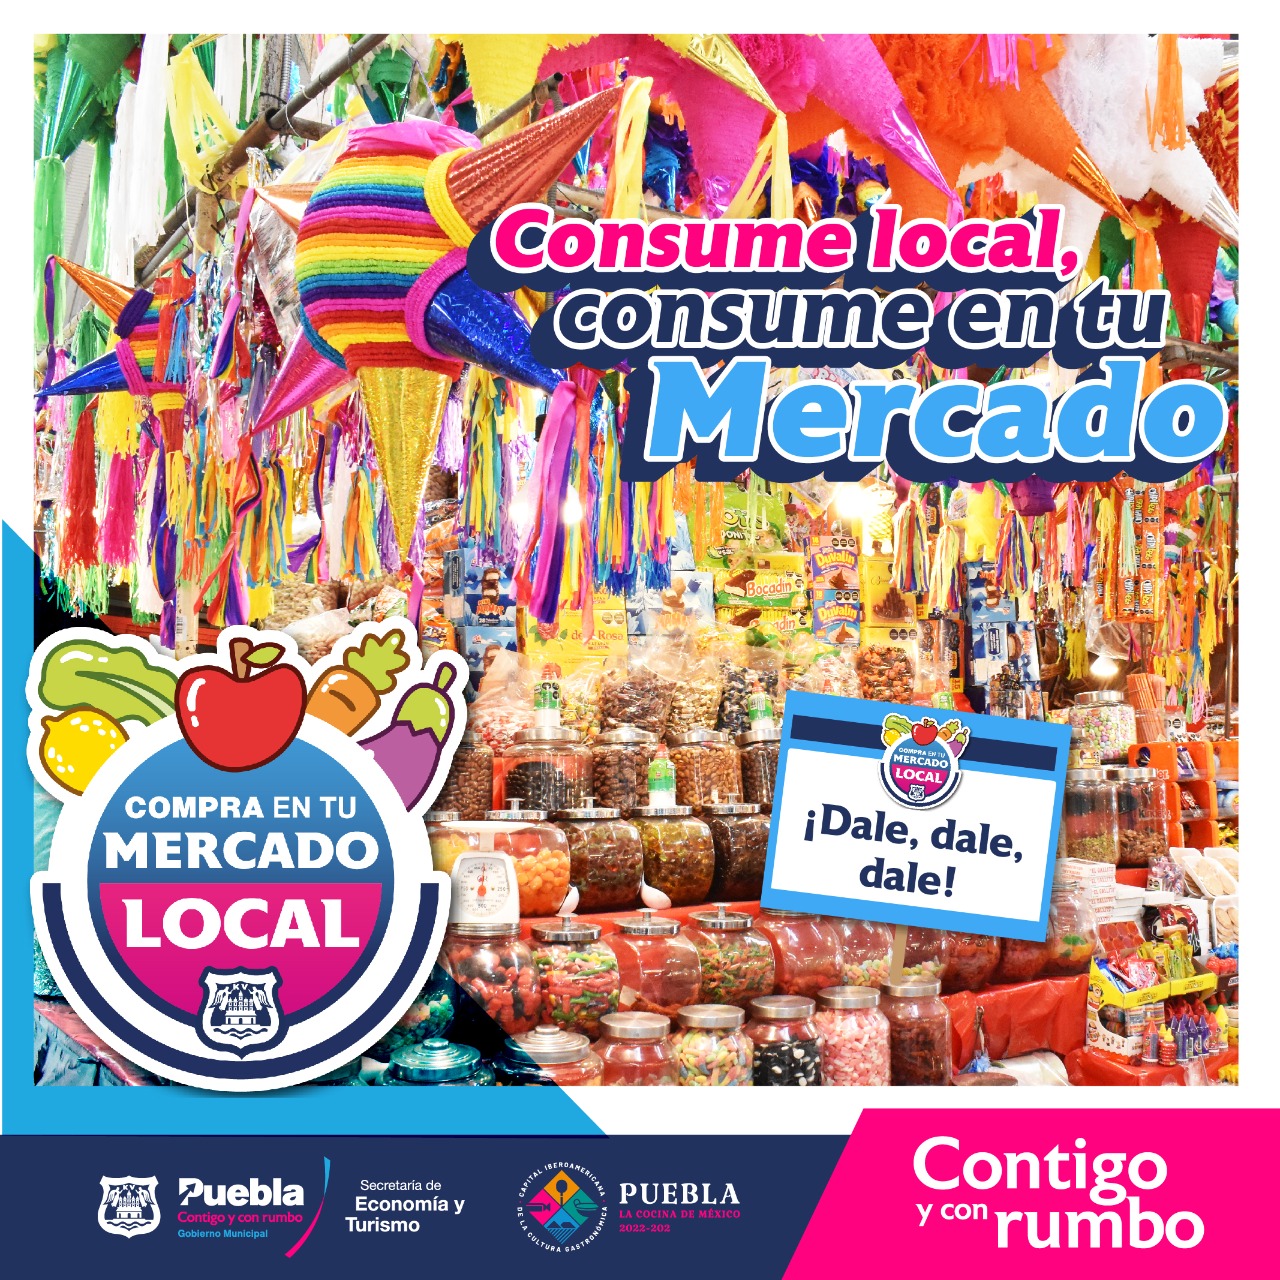 Consumir en los mercados locales, pide el ayuntamiento de Puebla